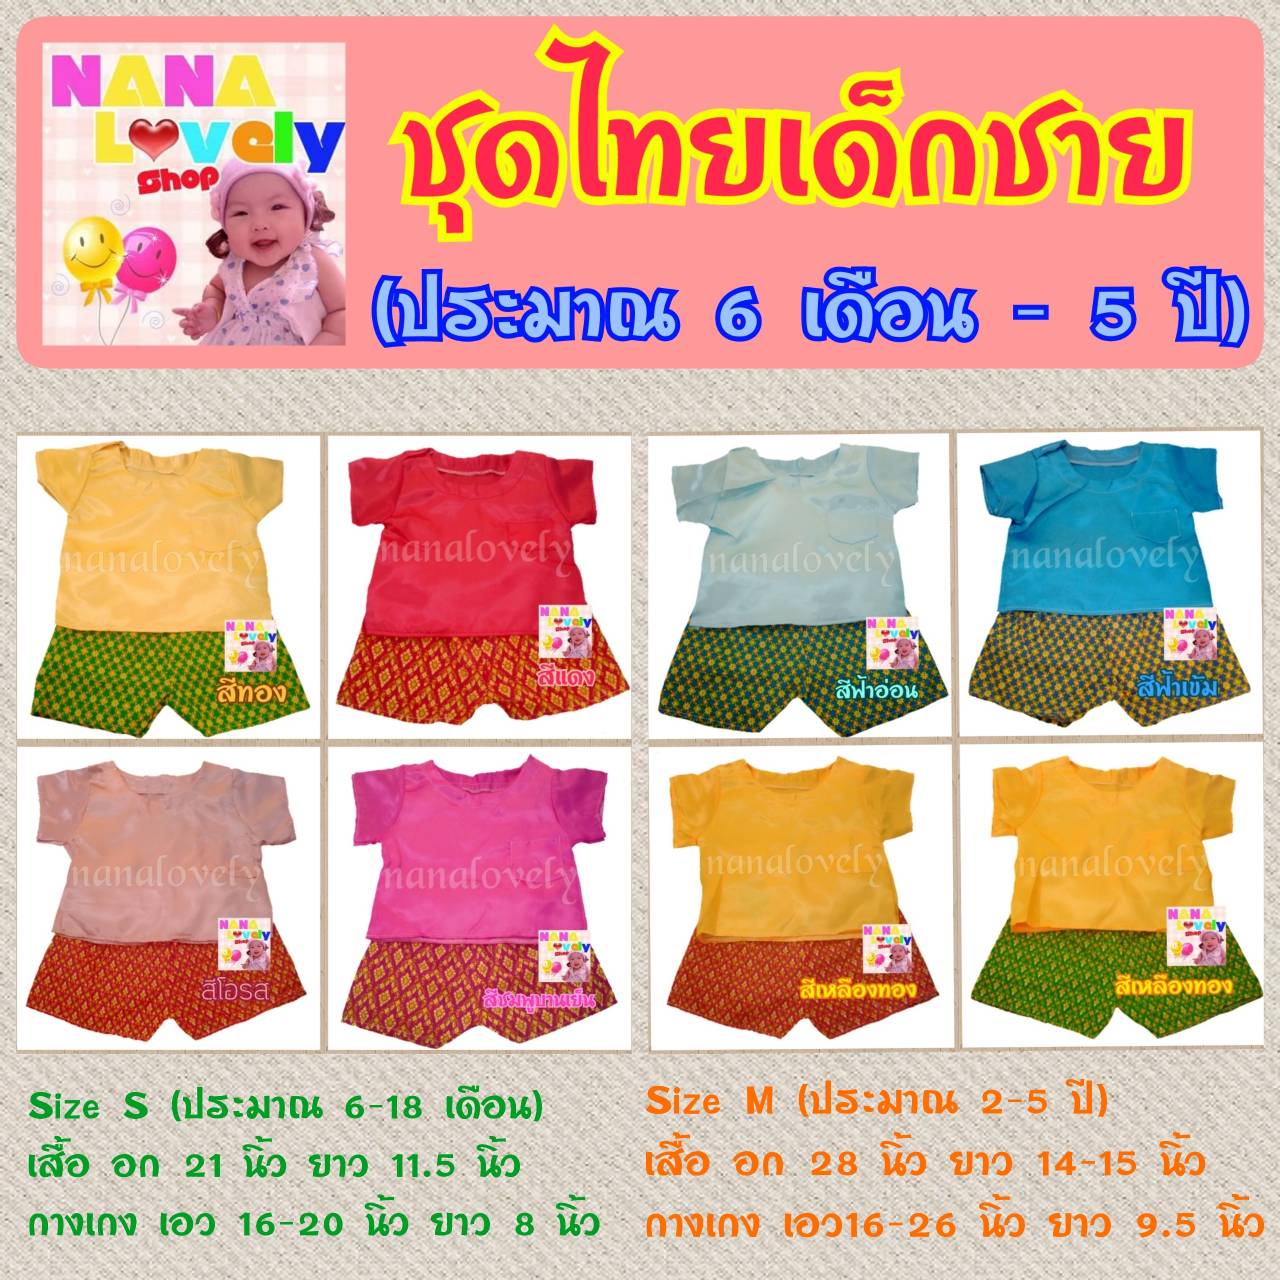 ชุดไทยเด็กชาย (6 เดือน - 5 ปี)